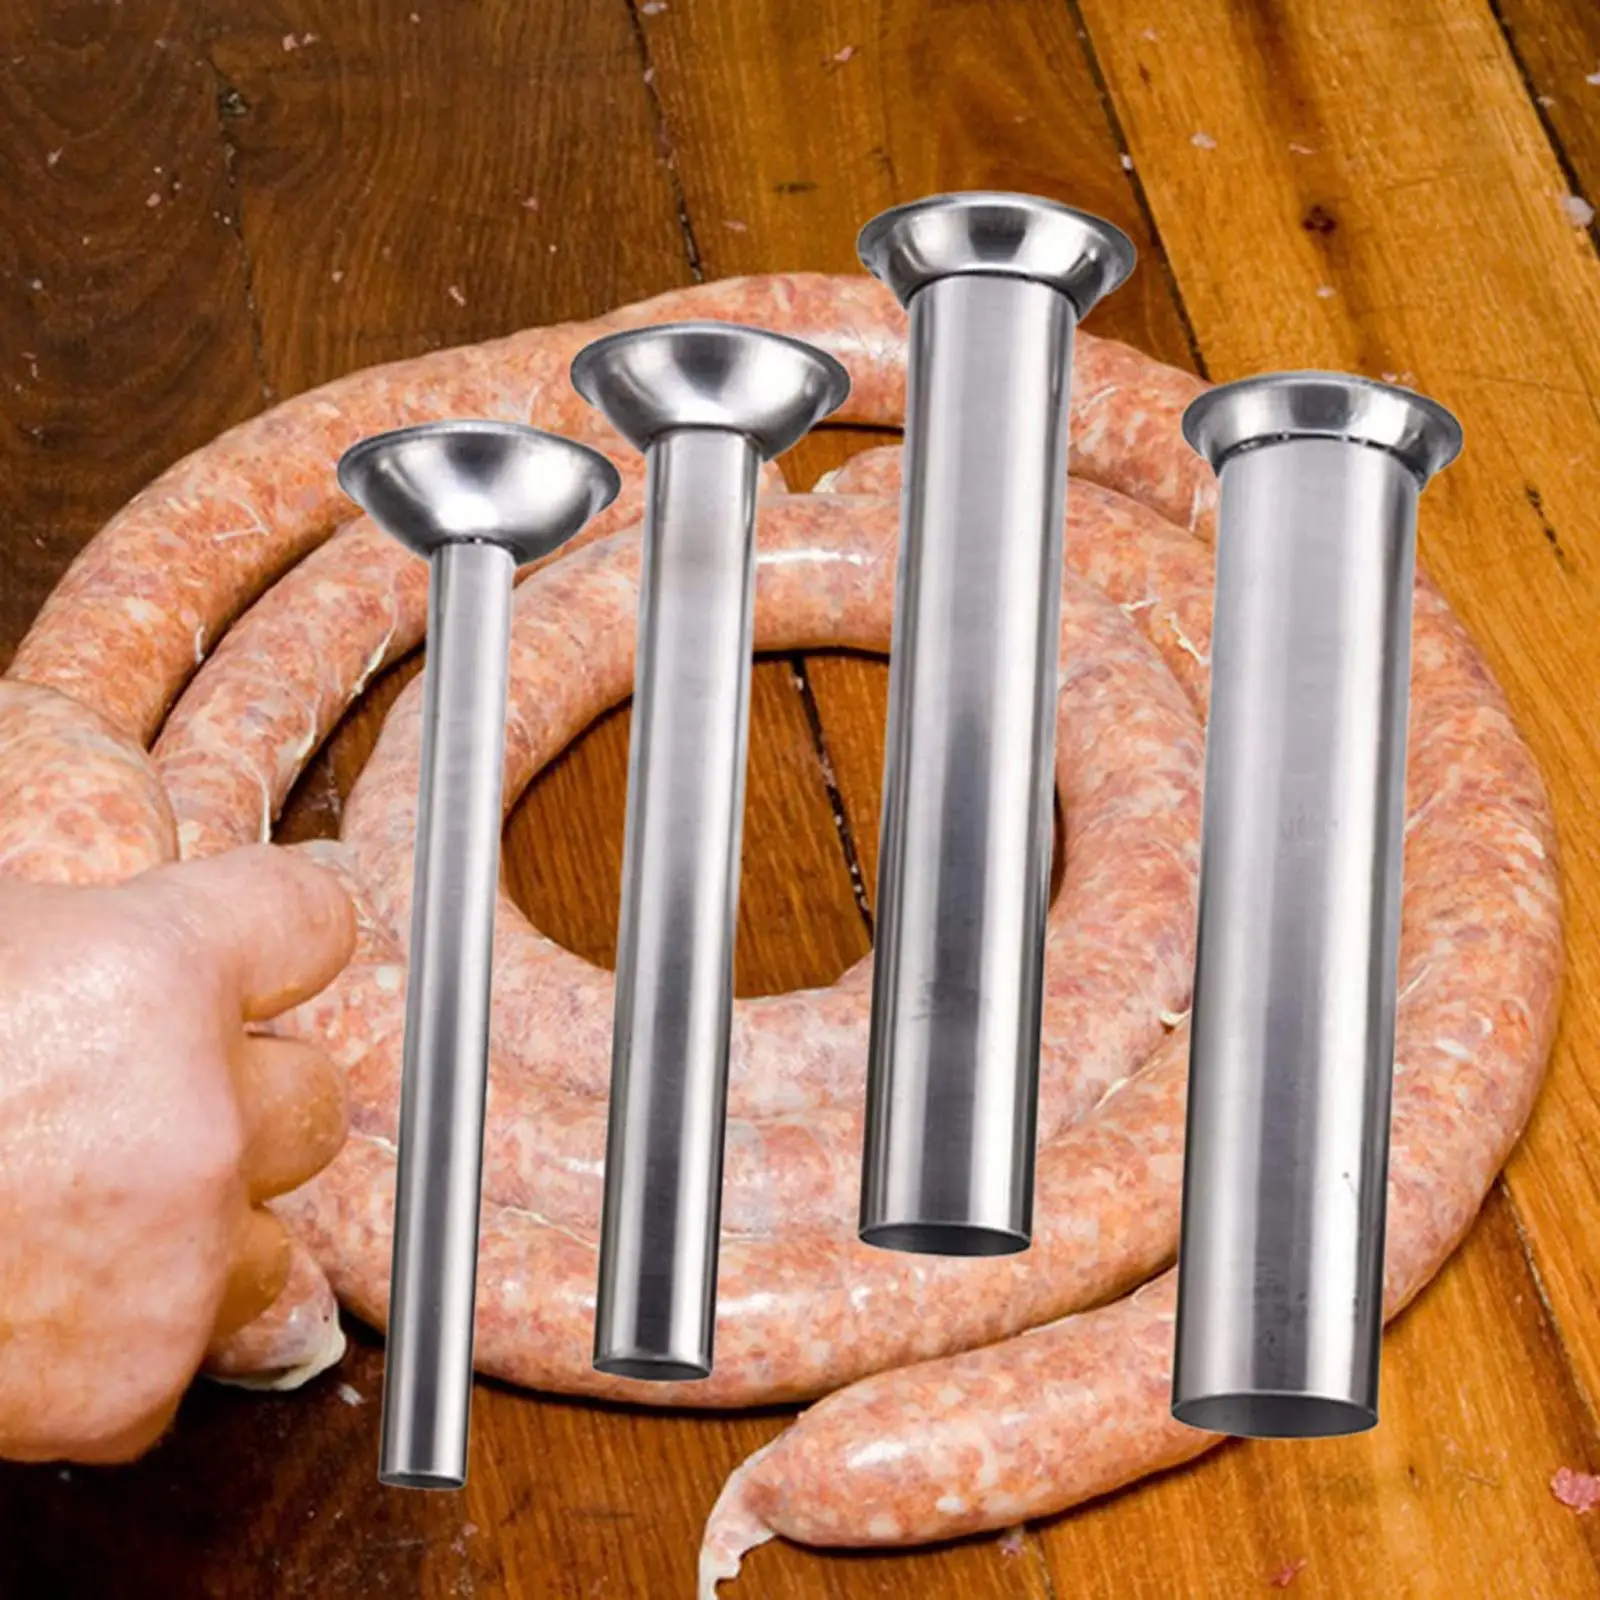 4x Sausage Stuffing Tubes Sausage Maker Kits Sausage Stuffer Funnels for Meat Grinder Food Grinder Enterprise Stuffer Lard Press